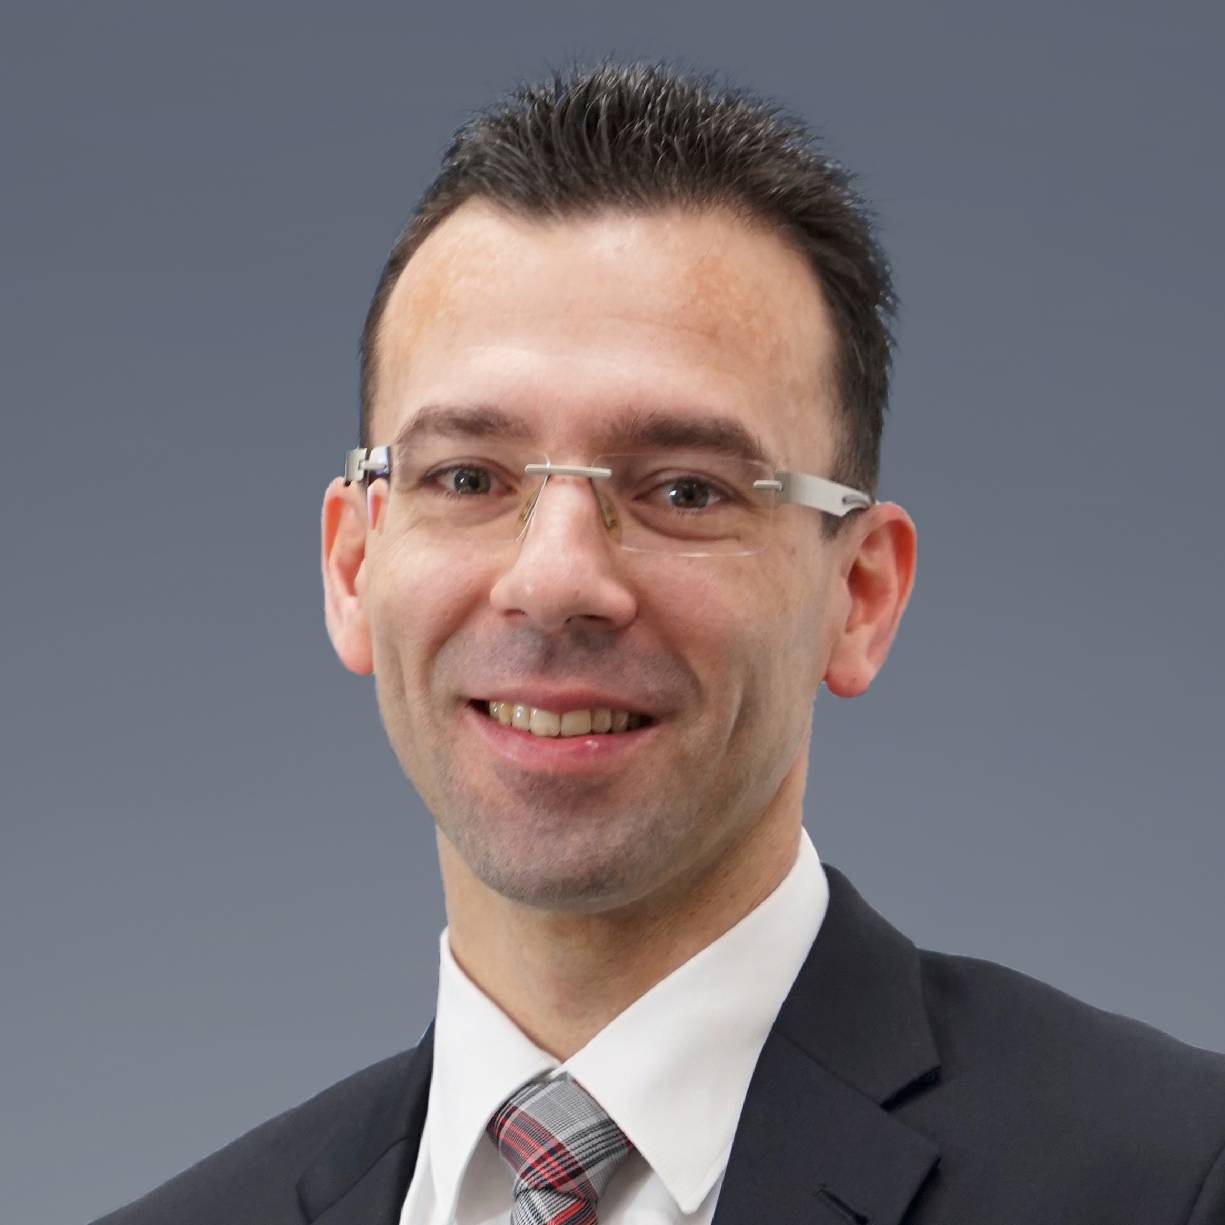 Notar Jörg Marquardt in Waiblingen ist Ihr Ansprechpartner für Immobilienkaufverträge, Testamente oder Notfallvorsorge